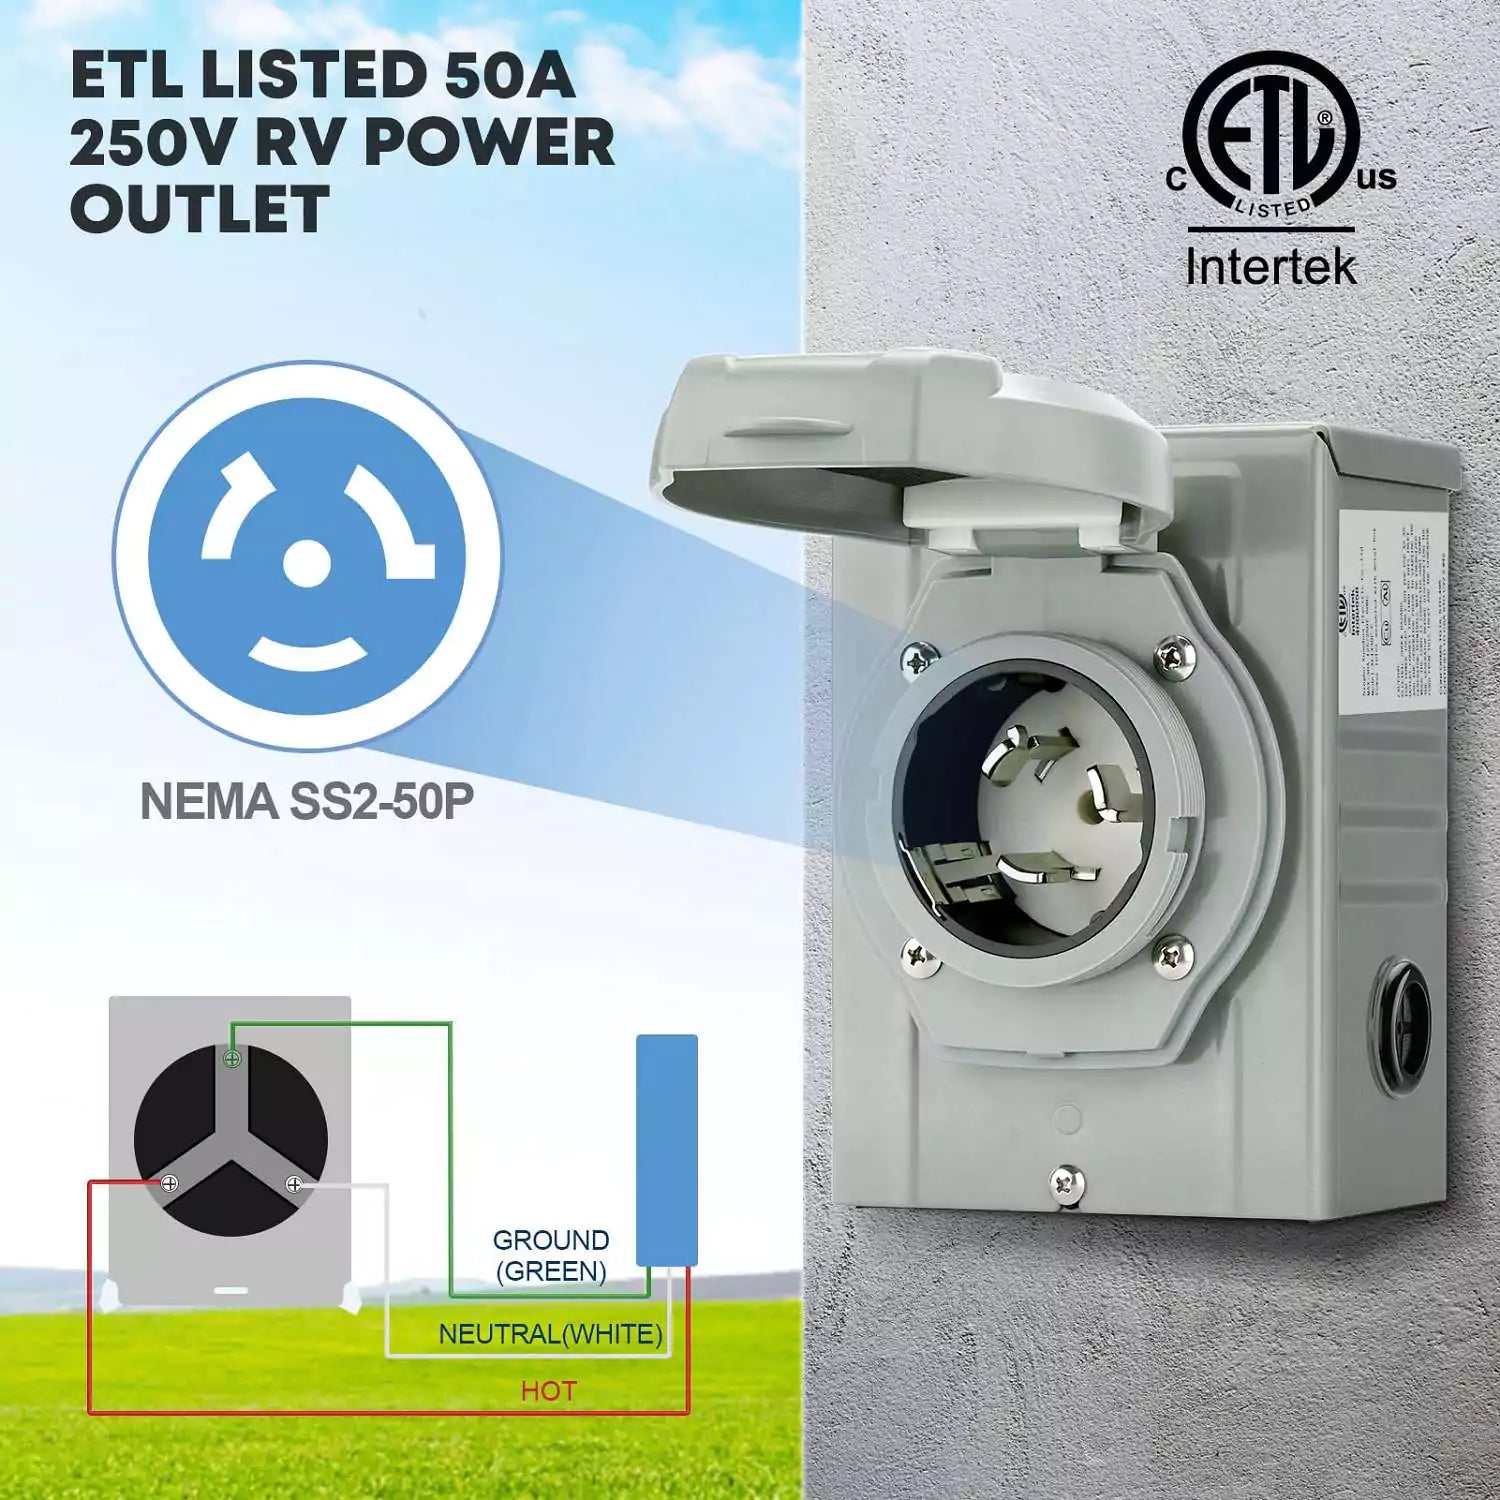 ETL listed 50A 250V RV power outlet